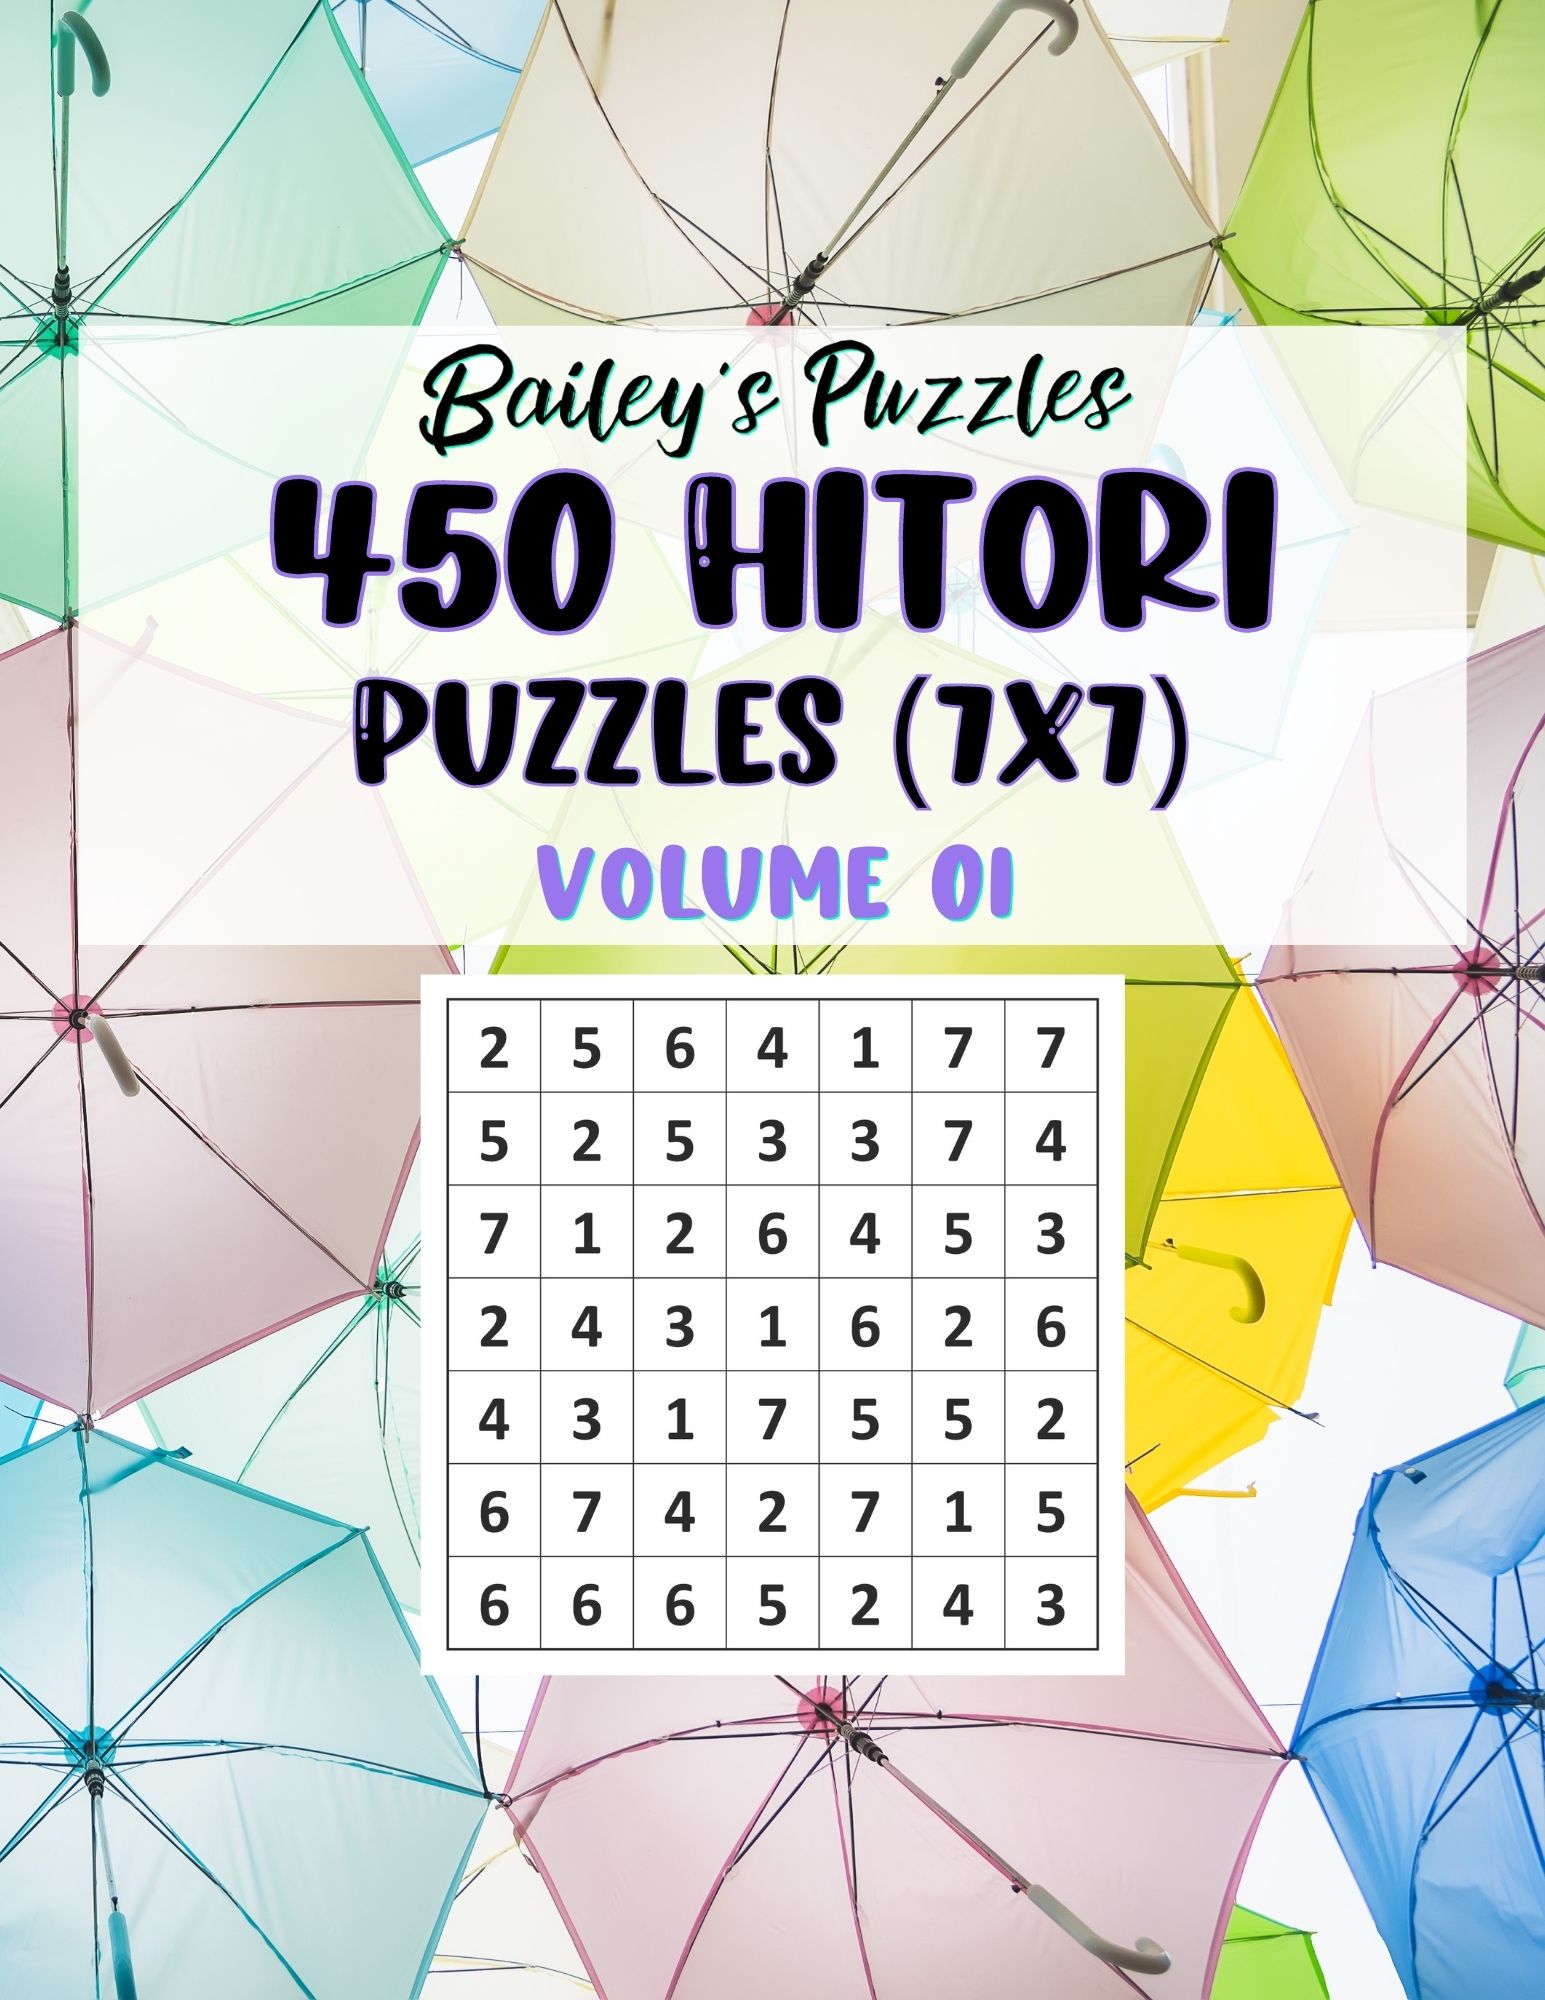 Buy Now: 450 Hitori Puzzles 7x7